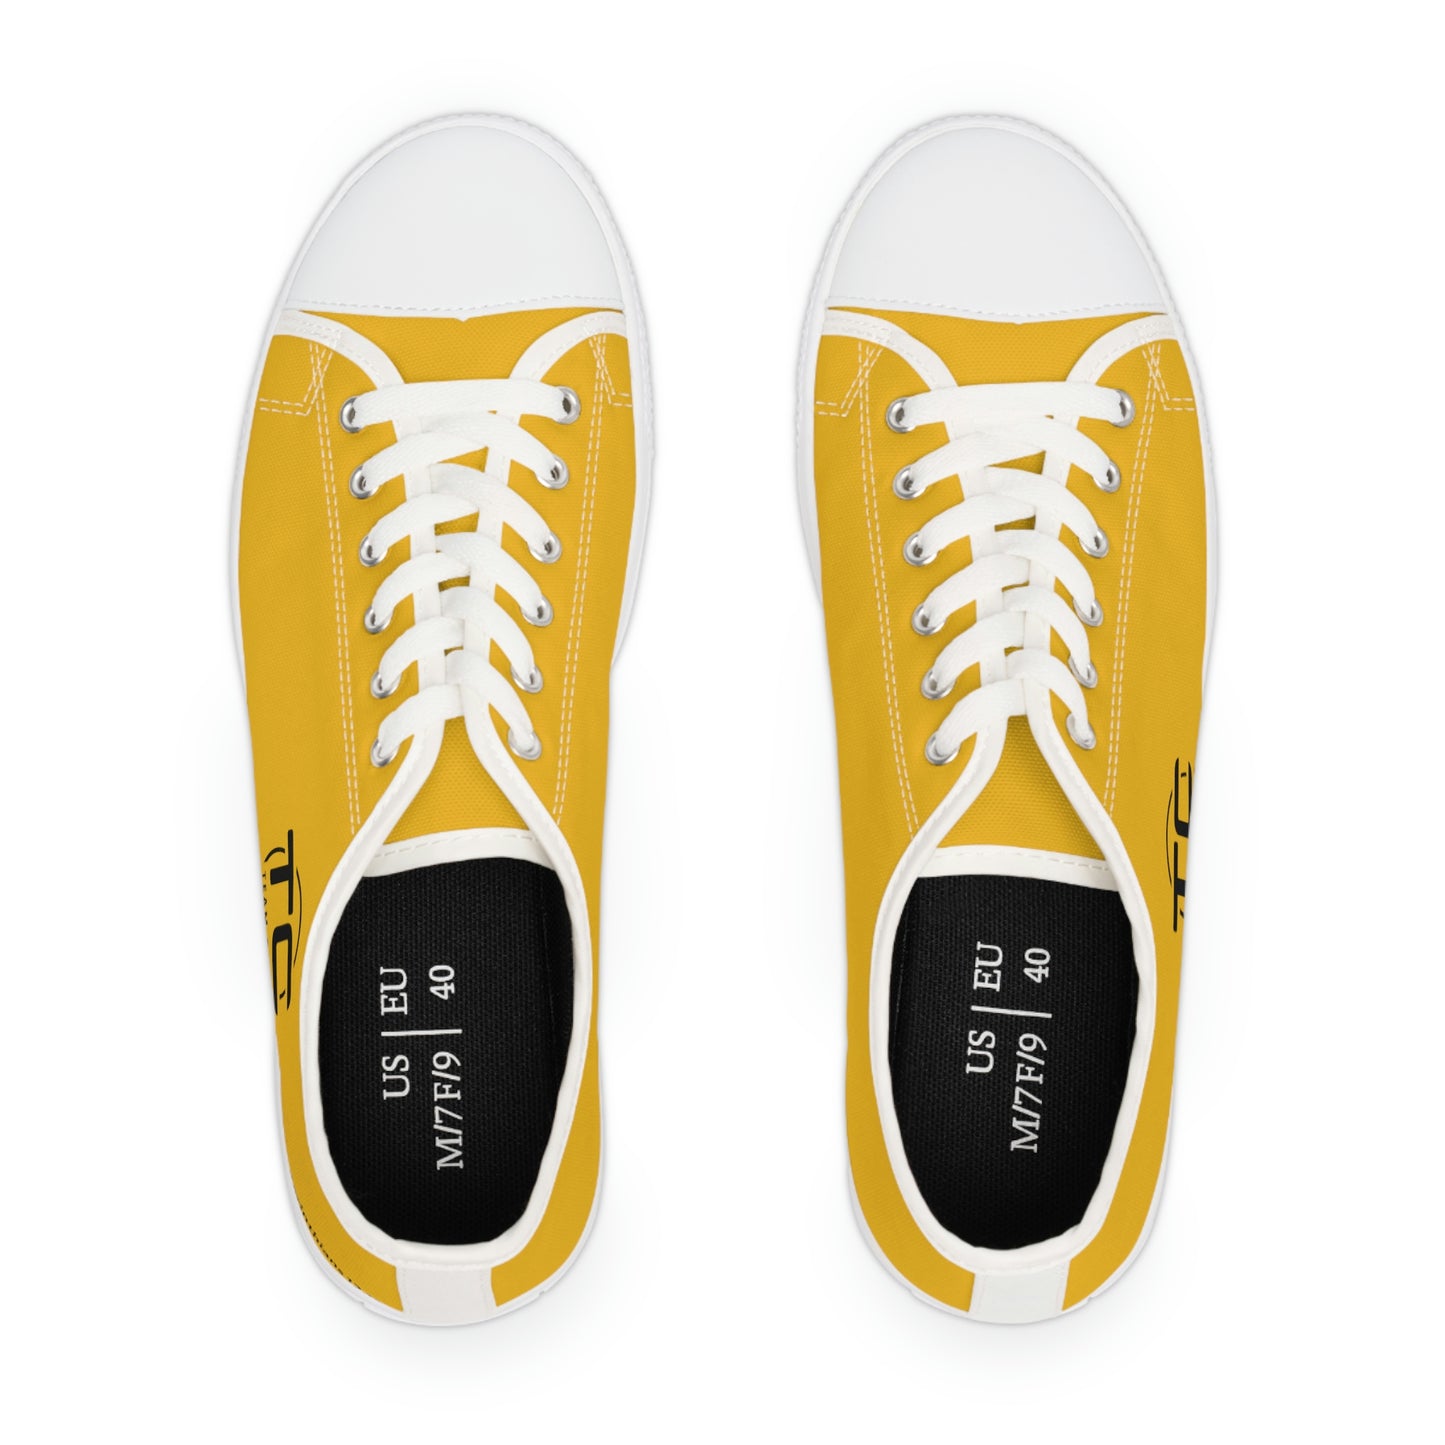 Women's Yellow Low Top Sneakers